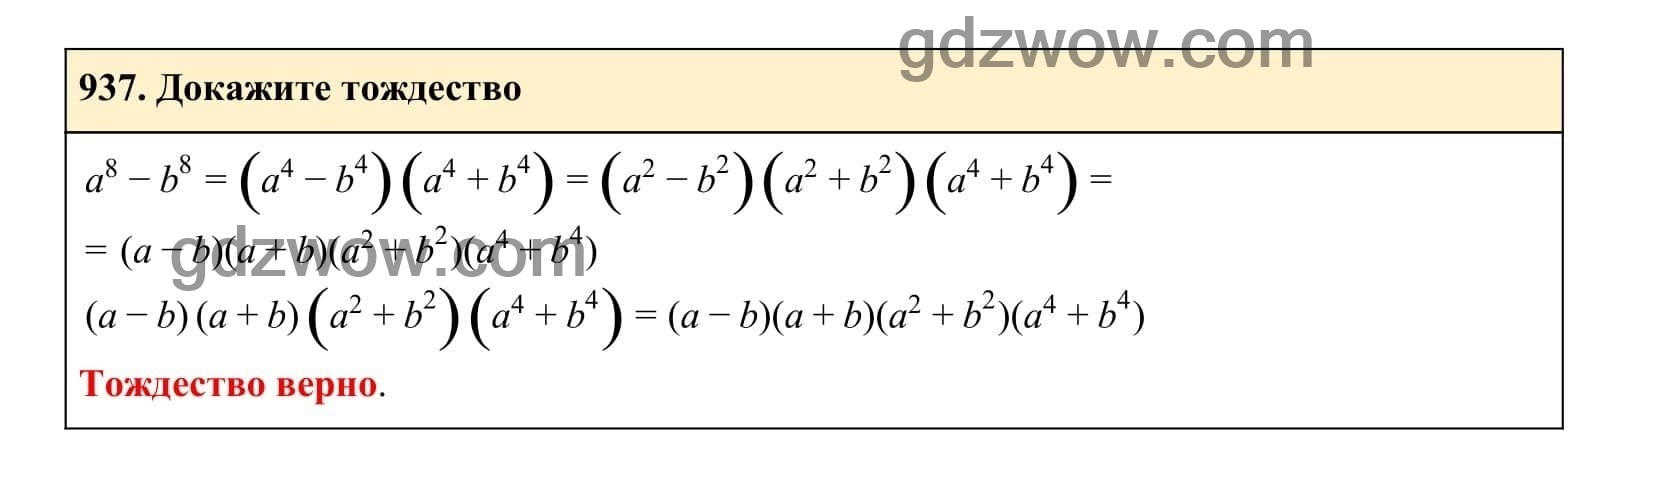 Упражнение 937 - ГДЗ по Алгебре 7 класс Учебник Макарычев (решебник) - GDZwow